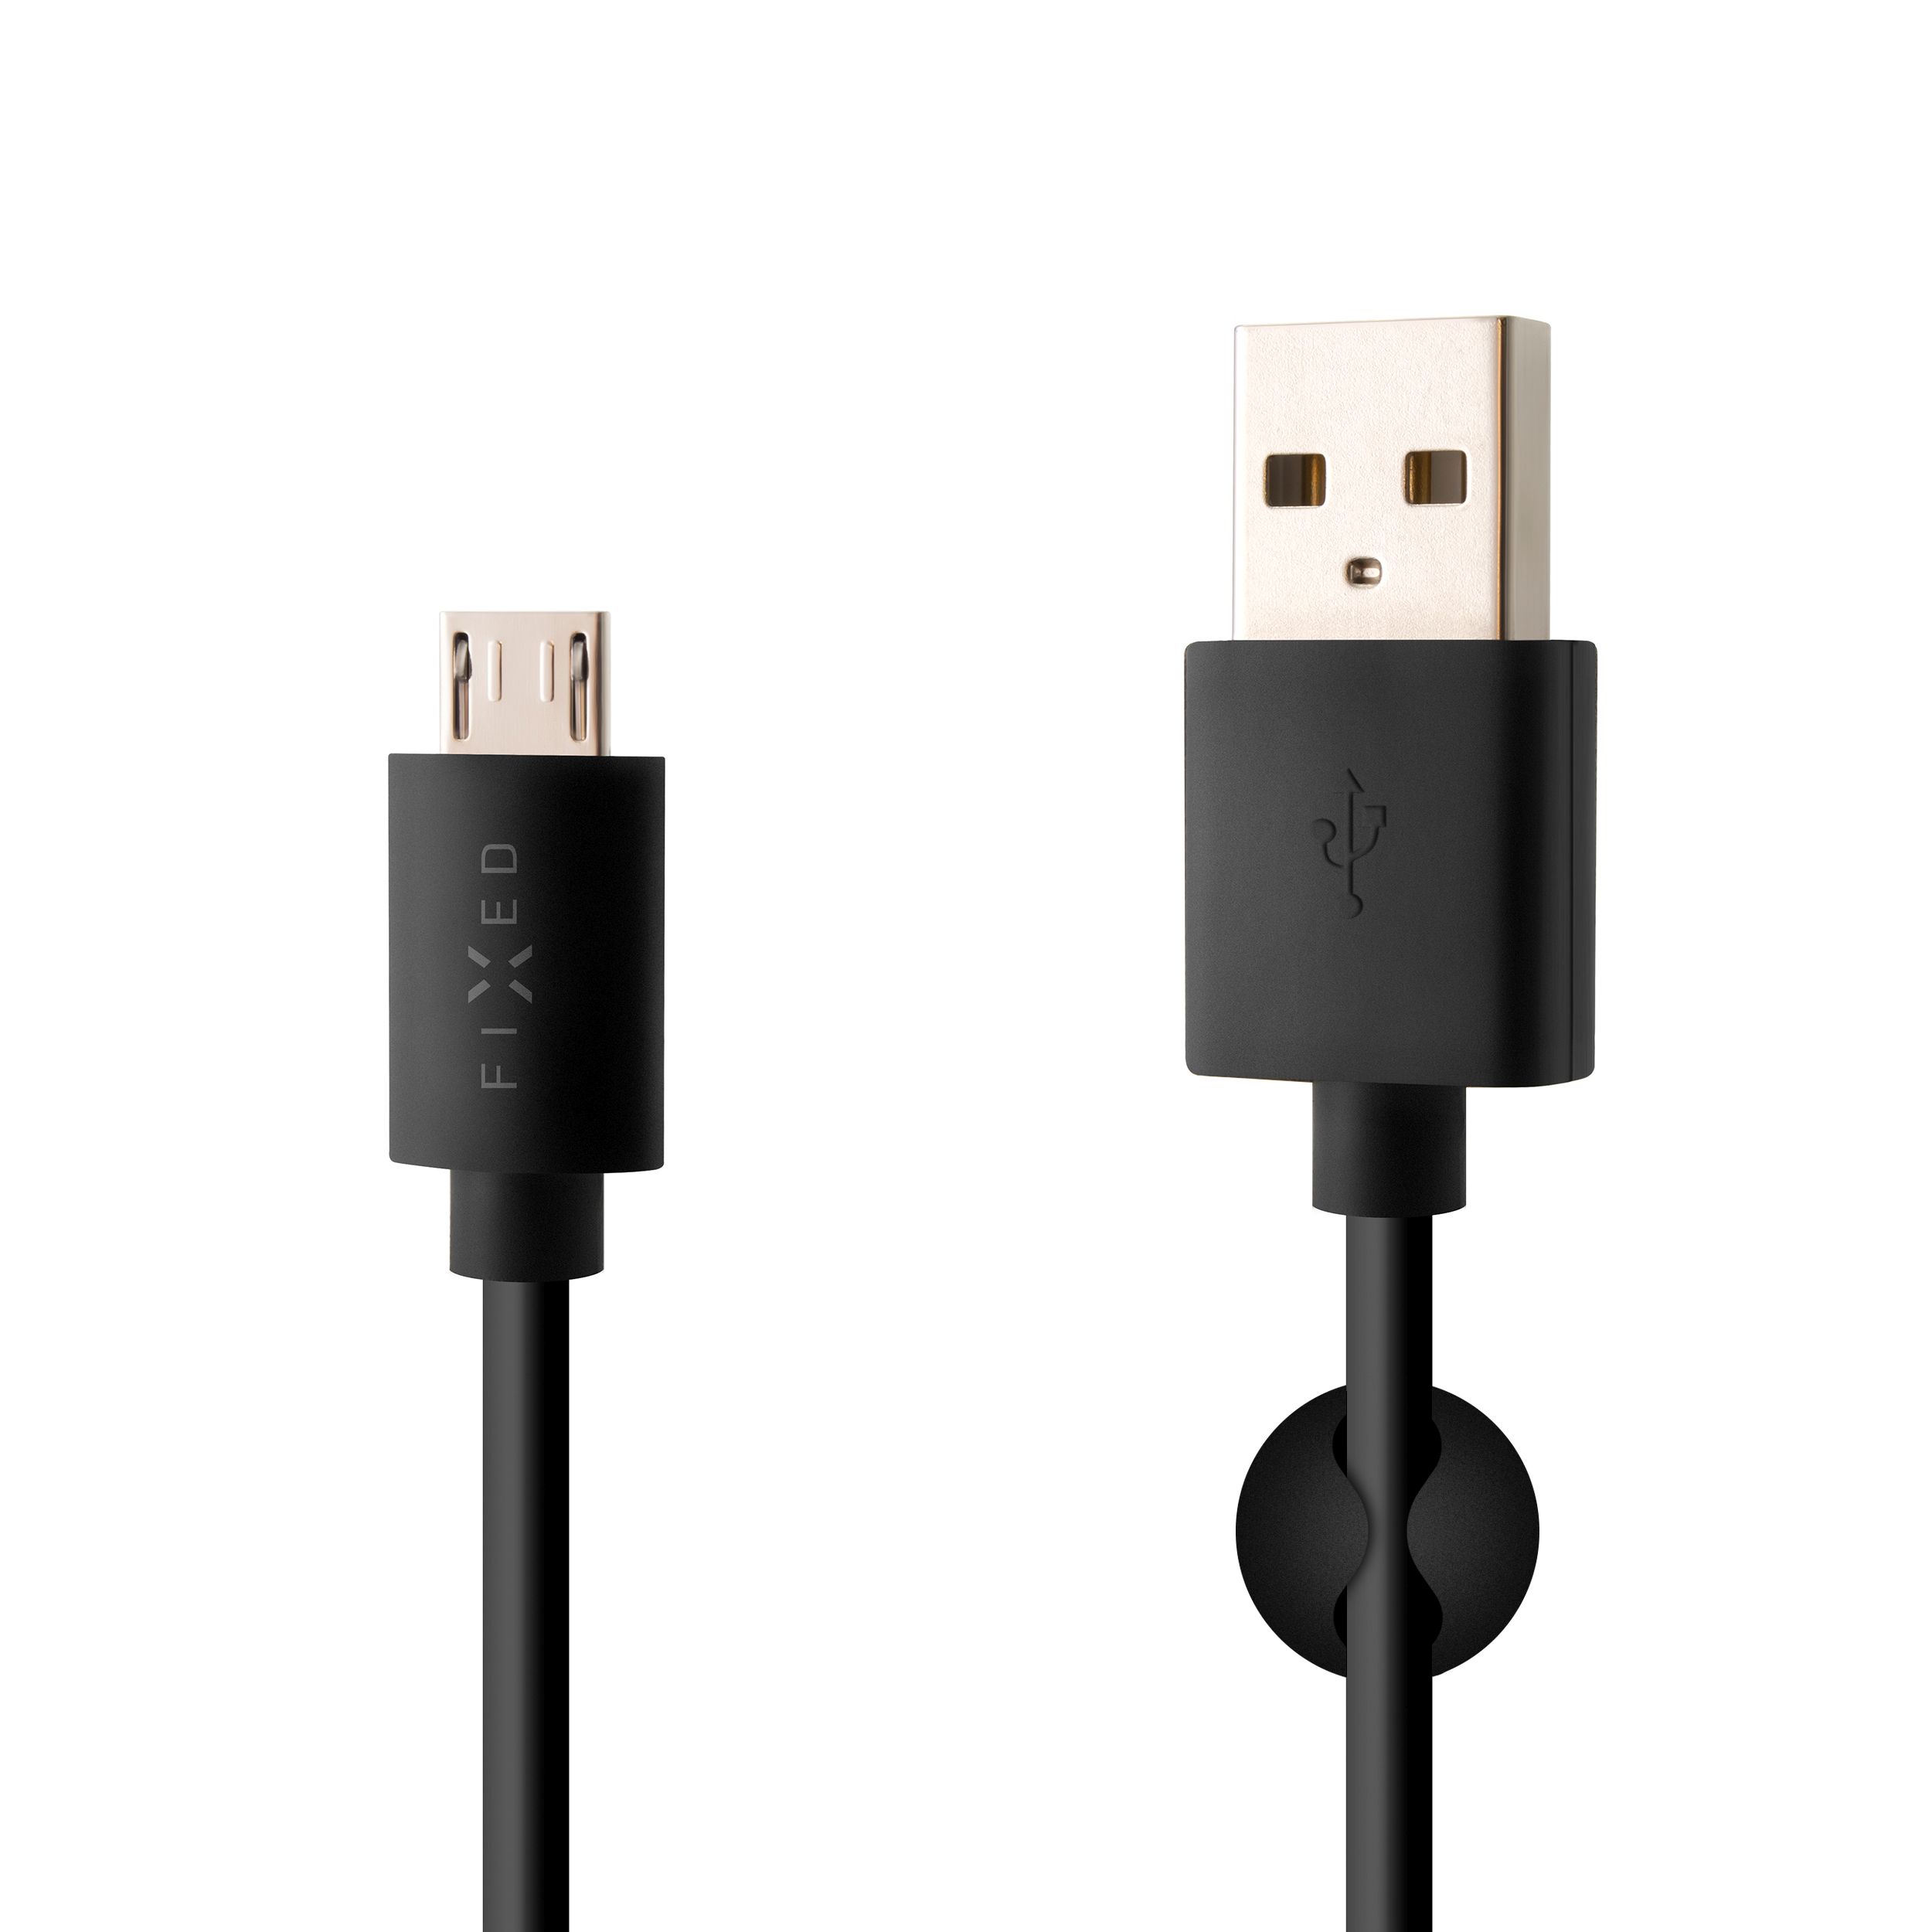 Dlouhý datový a nabíjecí kabel s konektory USB/micro USB, 2 metry, černý